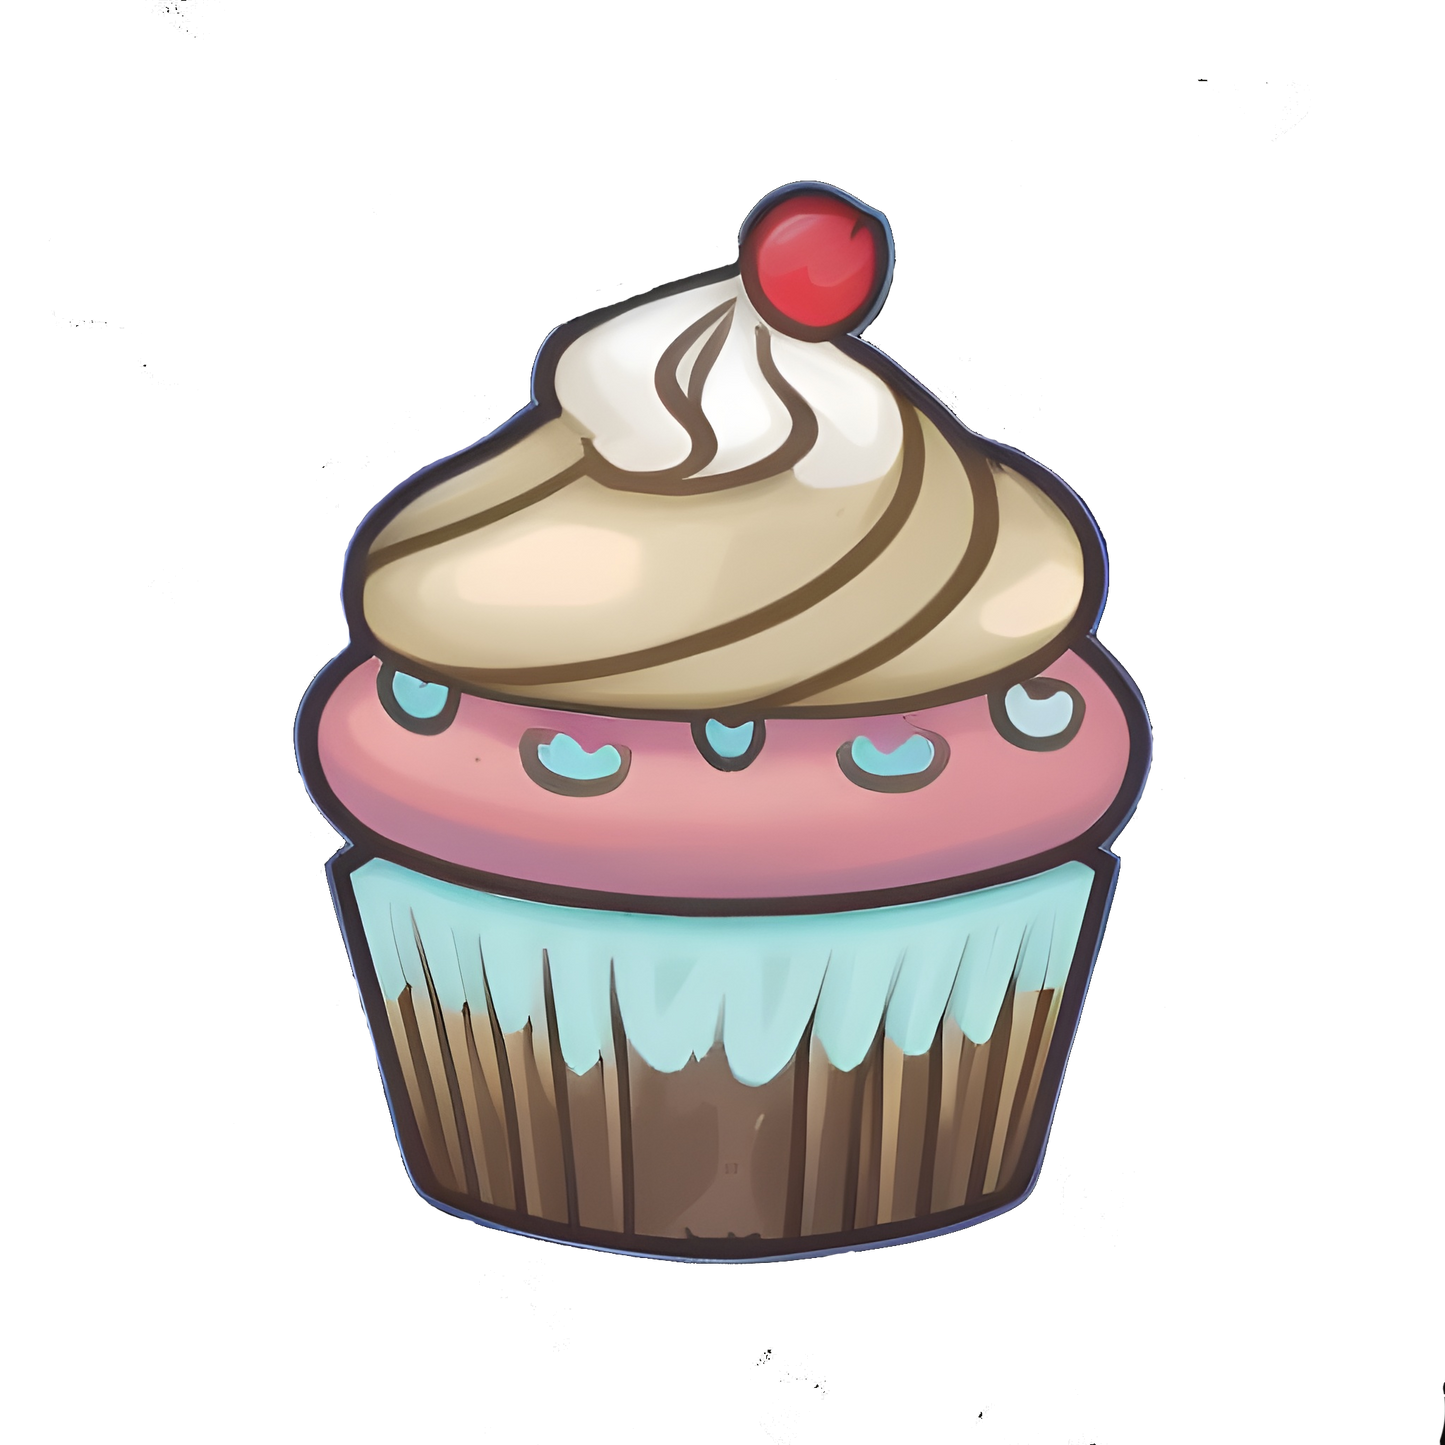 Tier 5 cupcake